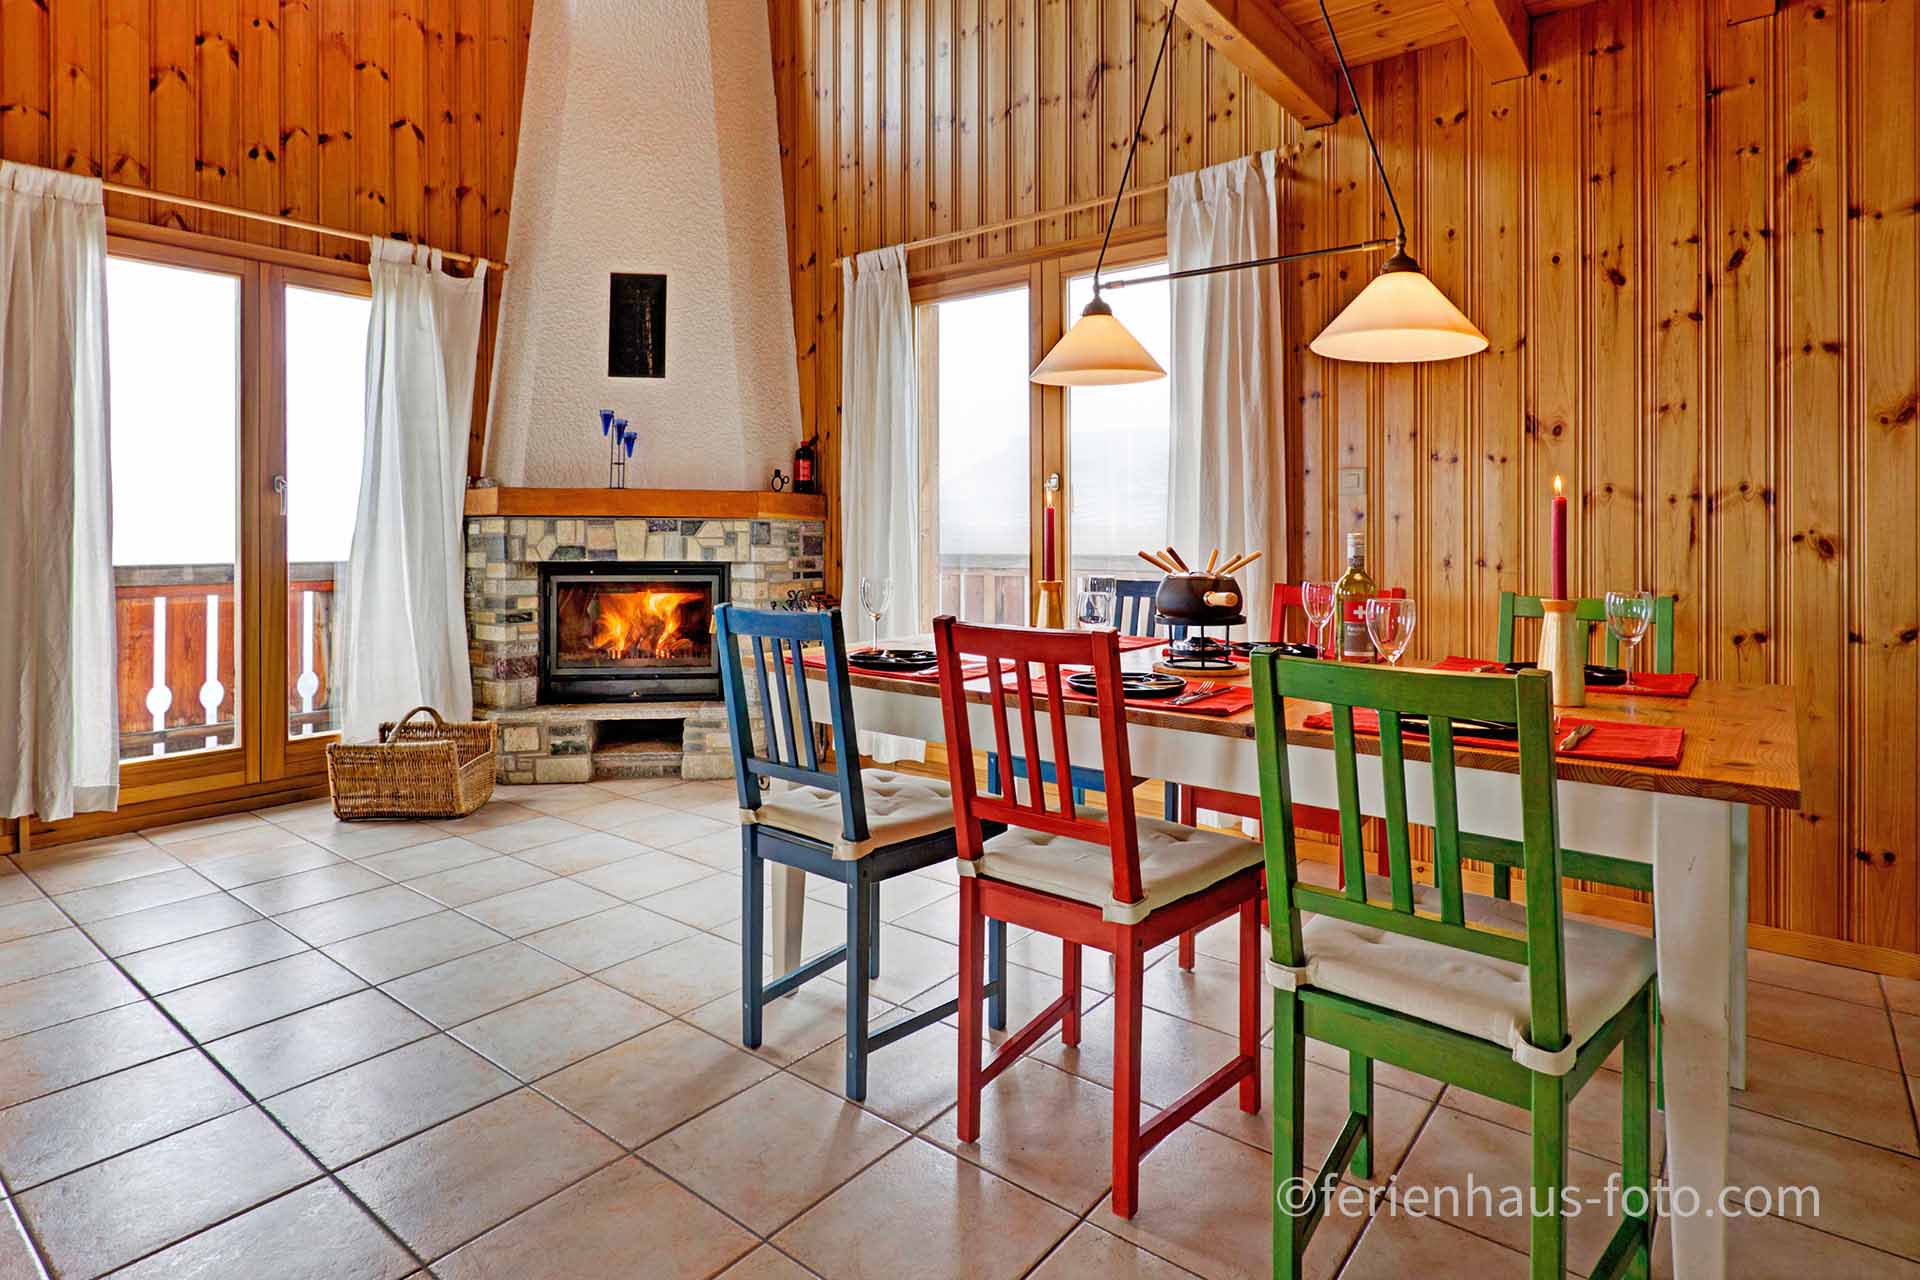 ferienhaus foto esszimmer mit rot grünen stühlen und offenem brenndendem kamin